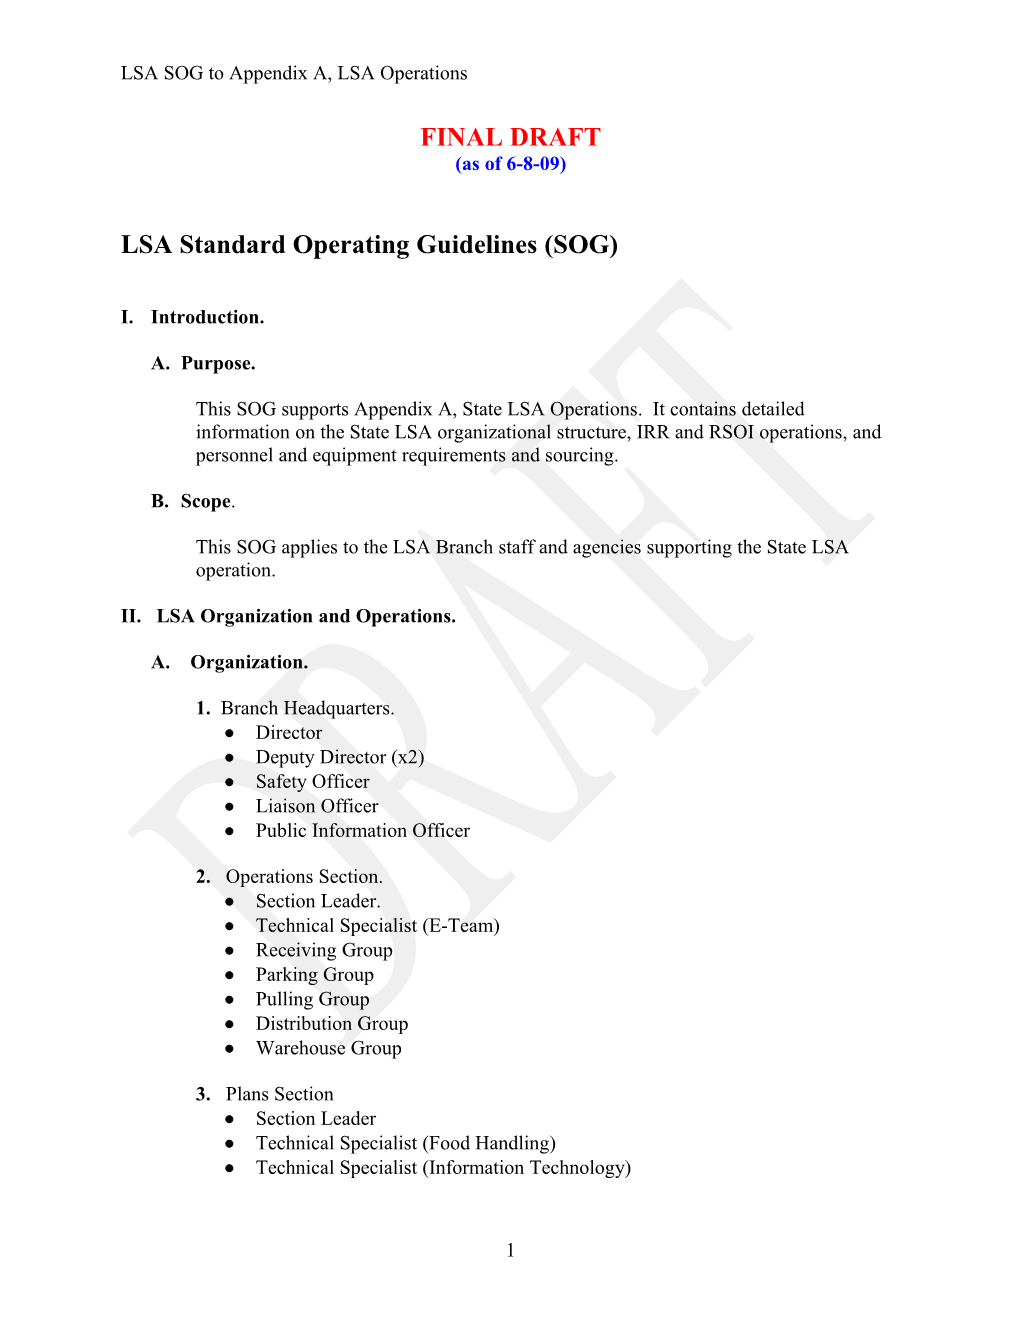 LSA SOG (FINAL DRAFT) to Appendix A, LSA Operations, 6-8-09